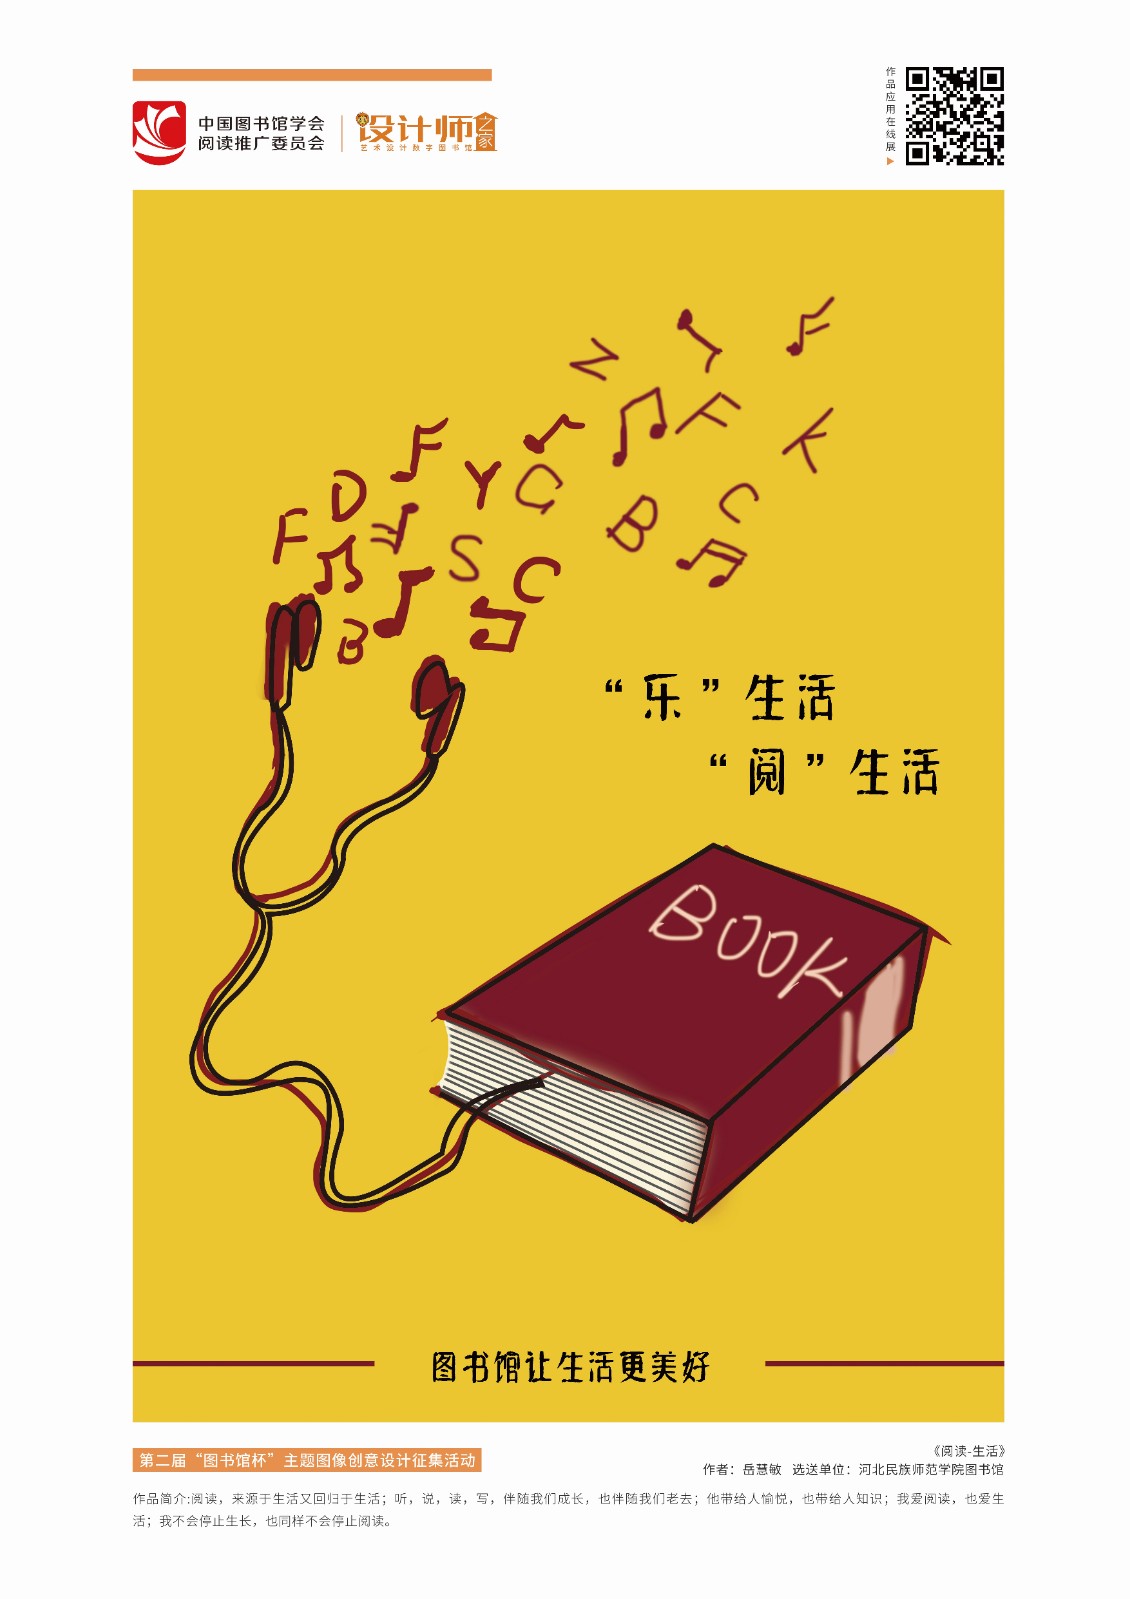 19446-岳慧敏-《阅读-生活》-河北民族师范学院图书馆-1